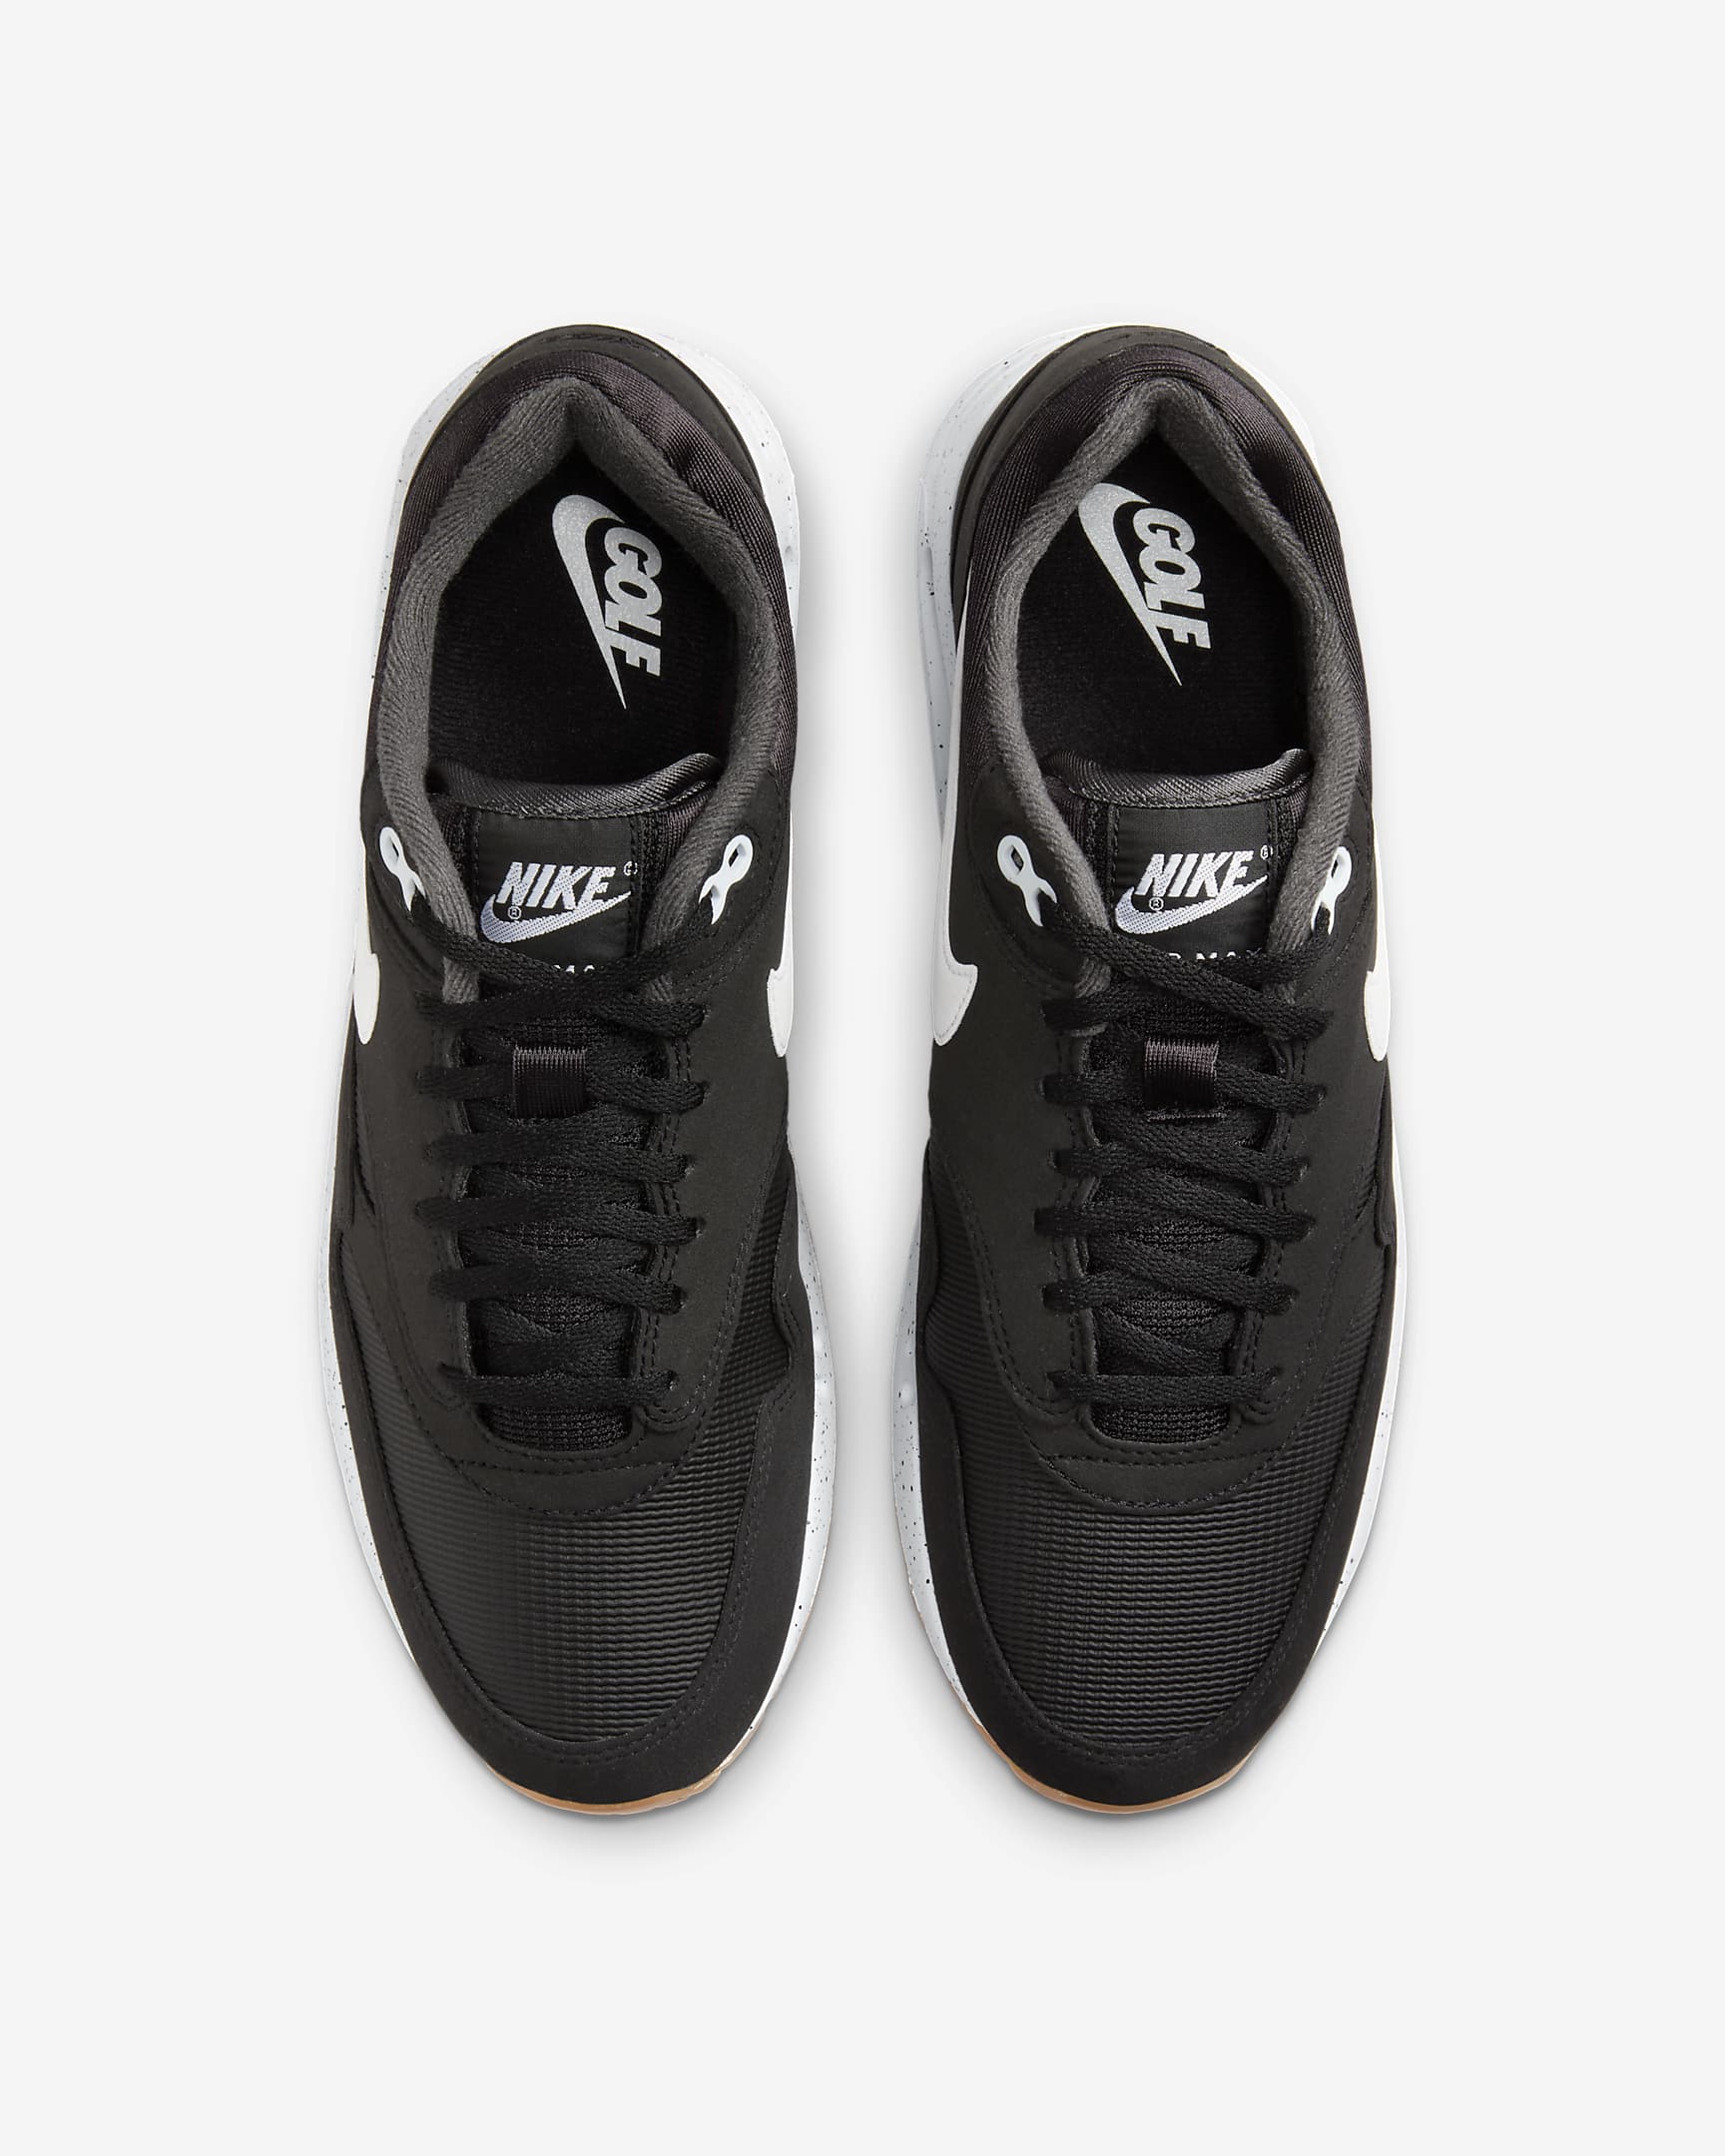 Nike Air Max 1 '86 OG G Men's Golf Shoes - Black/Anthracite/Gum Medium Brown/White